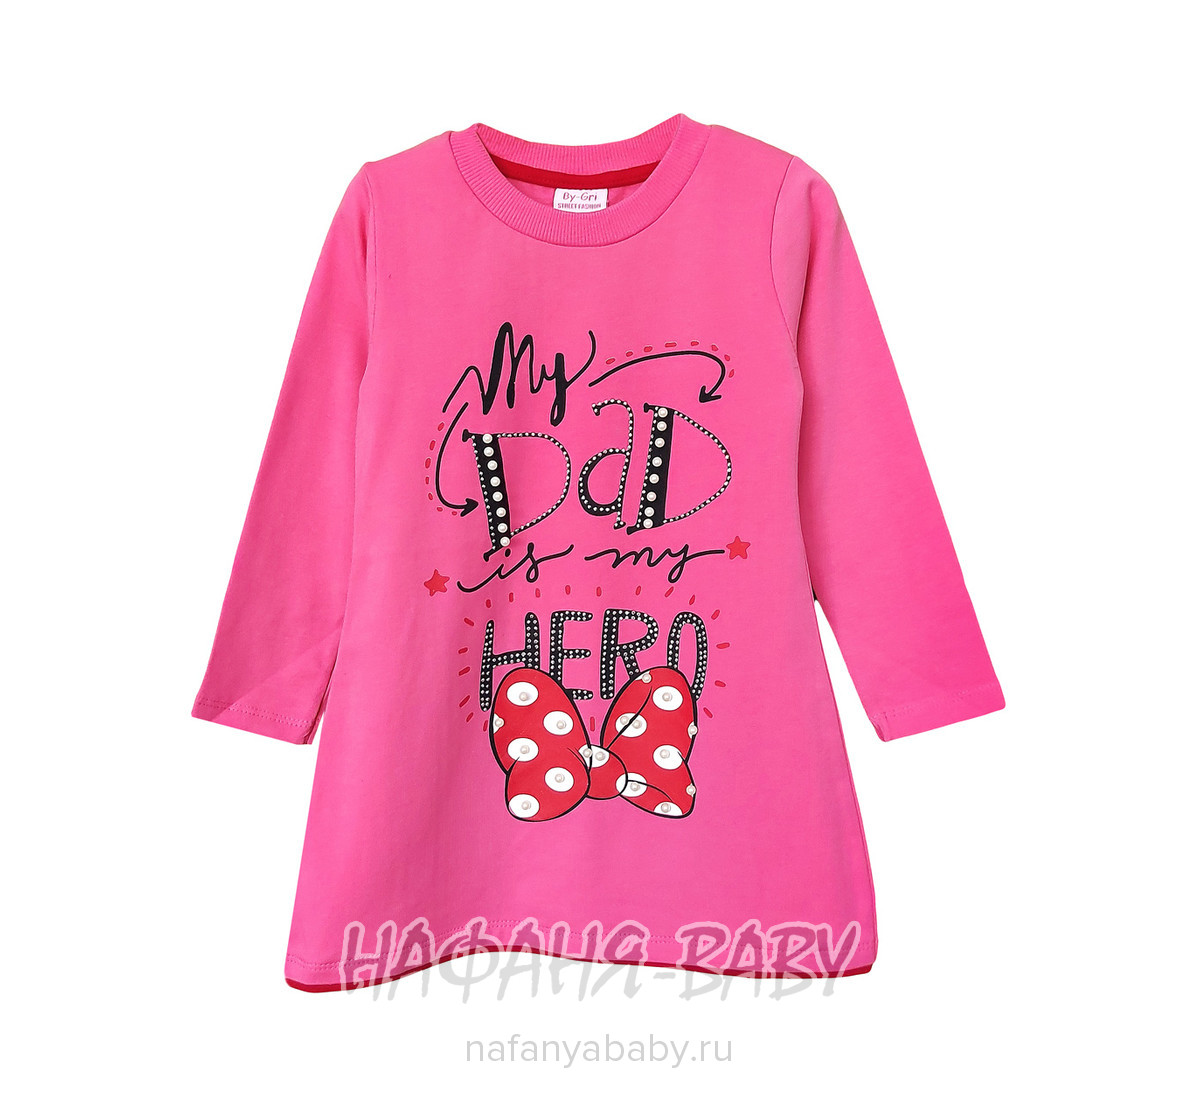 Детское трикотажное платье-туника BY GRI, купить в интернет магазине Нафаня. арт: 14555, цвет розовый